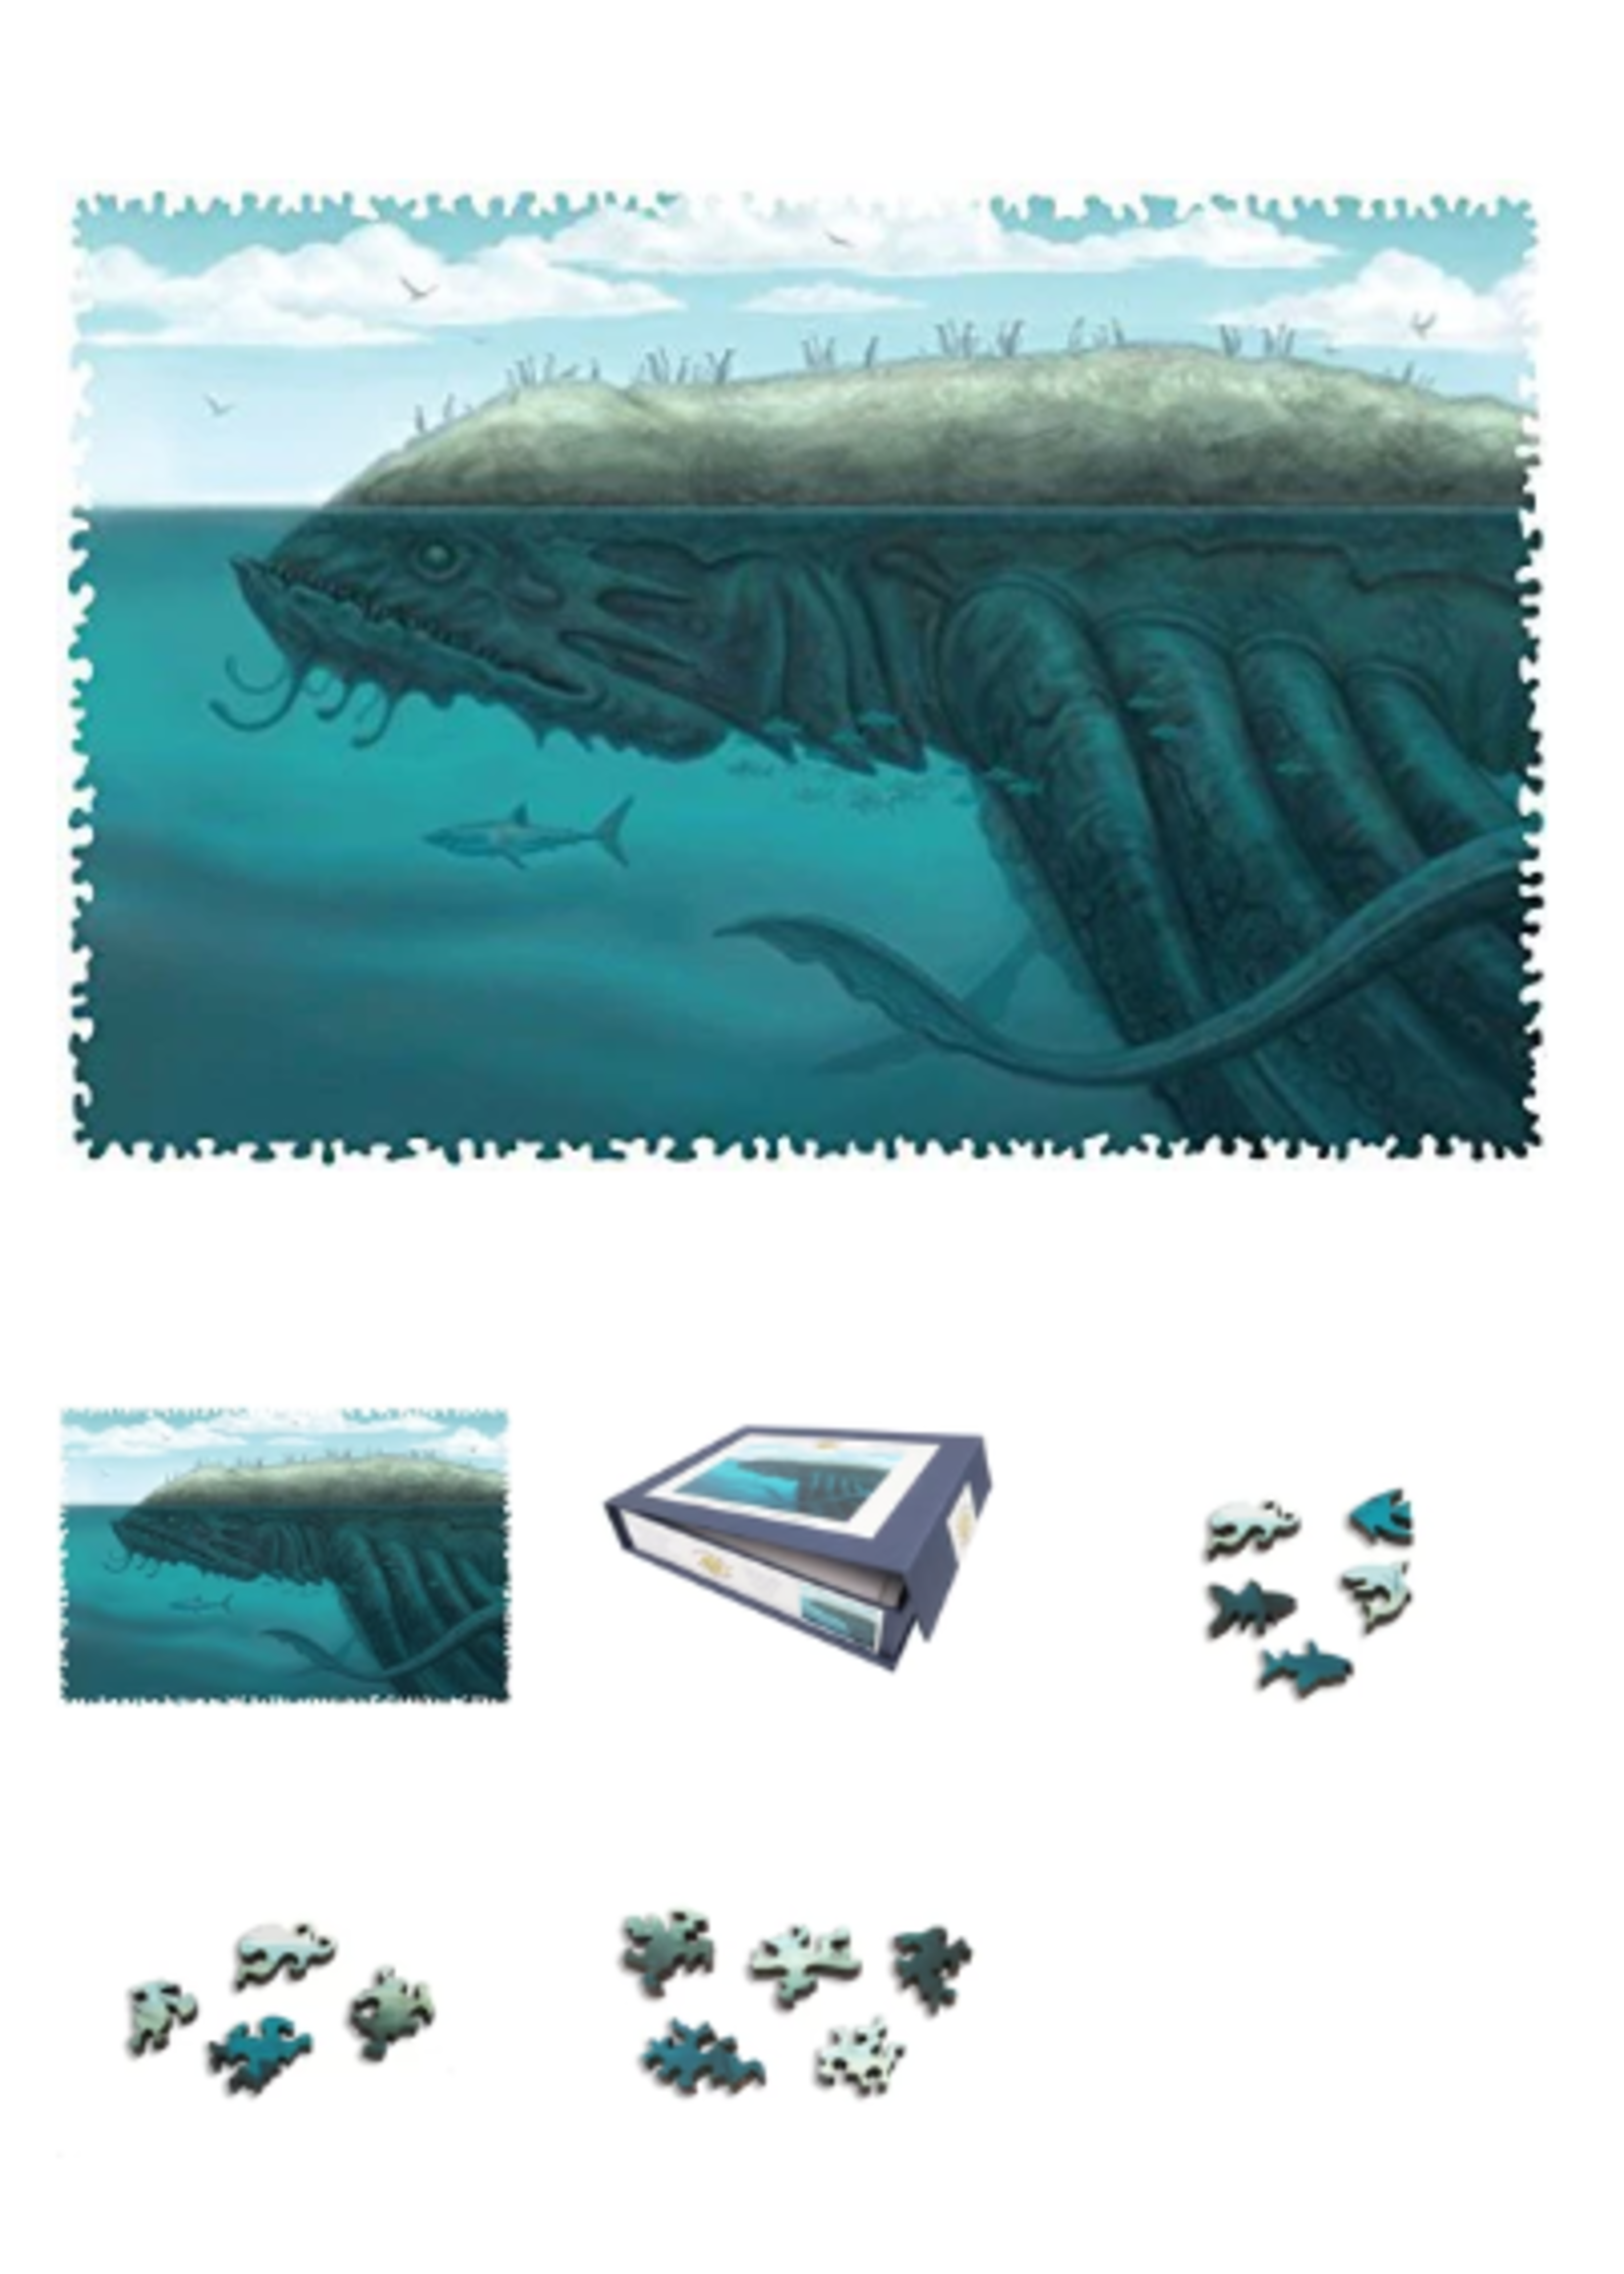 Artifact Artifact Puzzle: Allen Douglas The Kraken